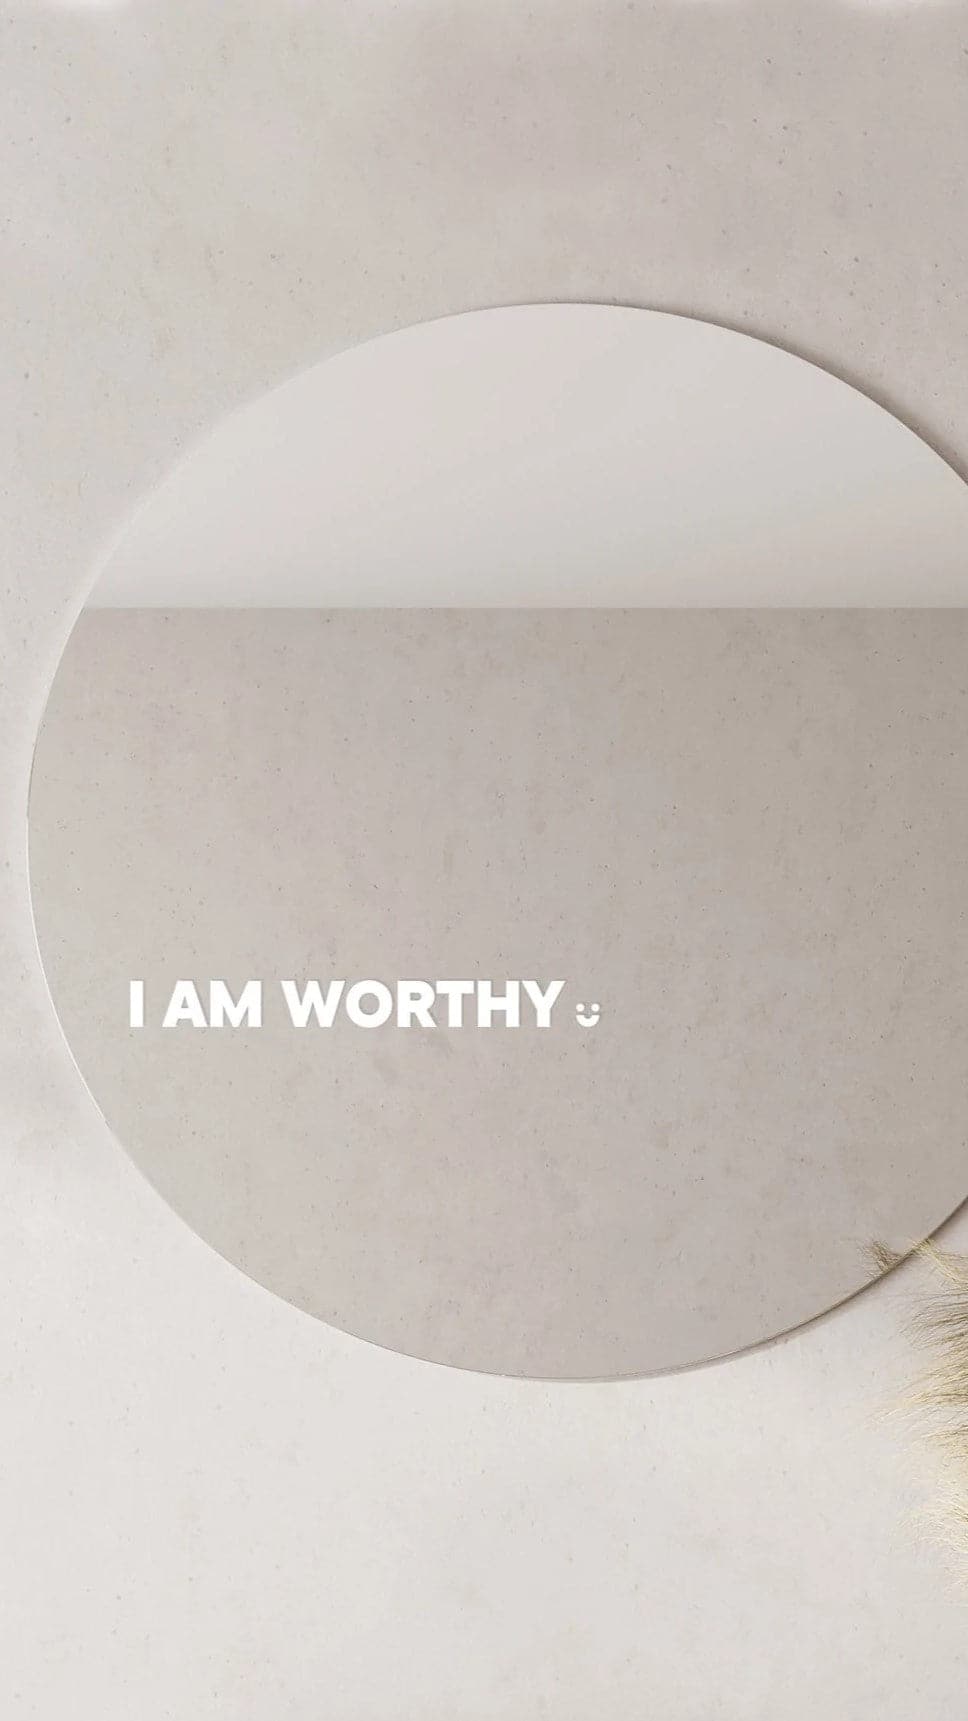 I Am Worthy - Affirmation Mirror Sticker